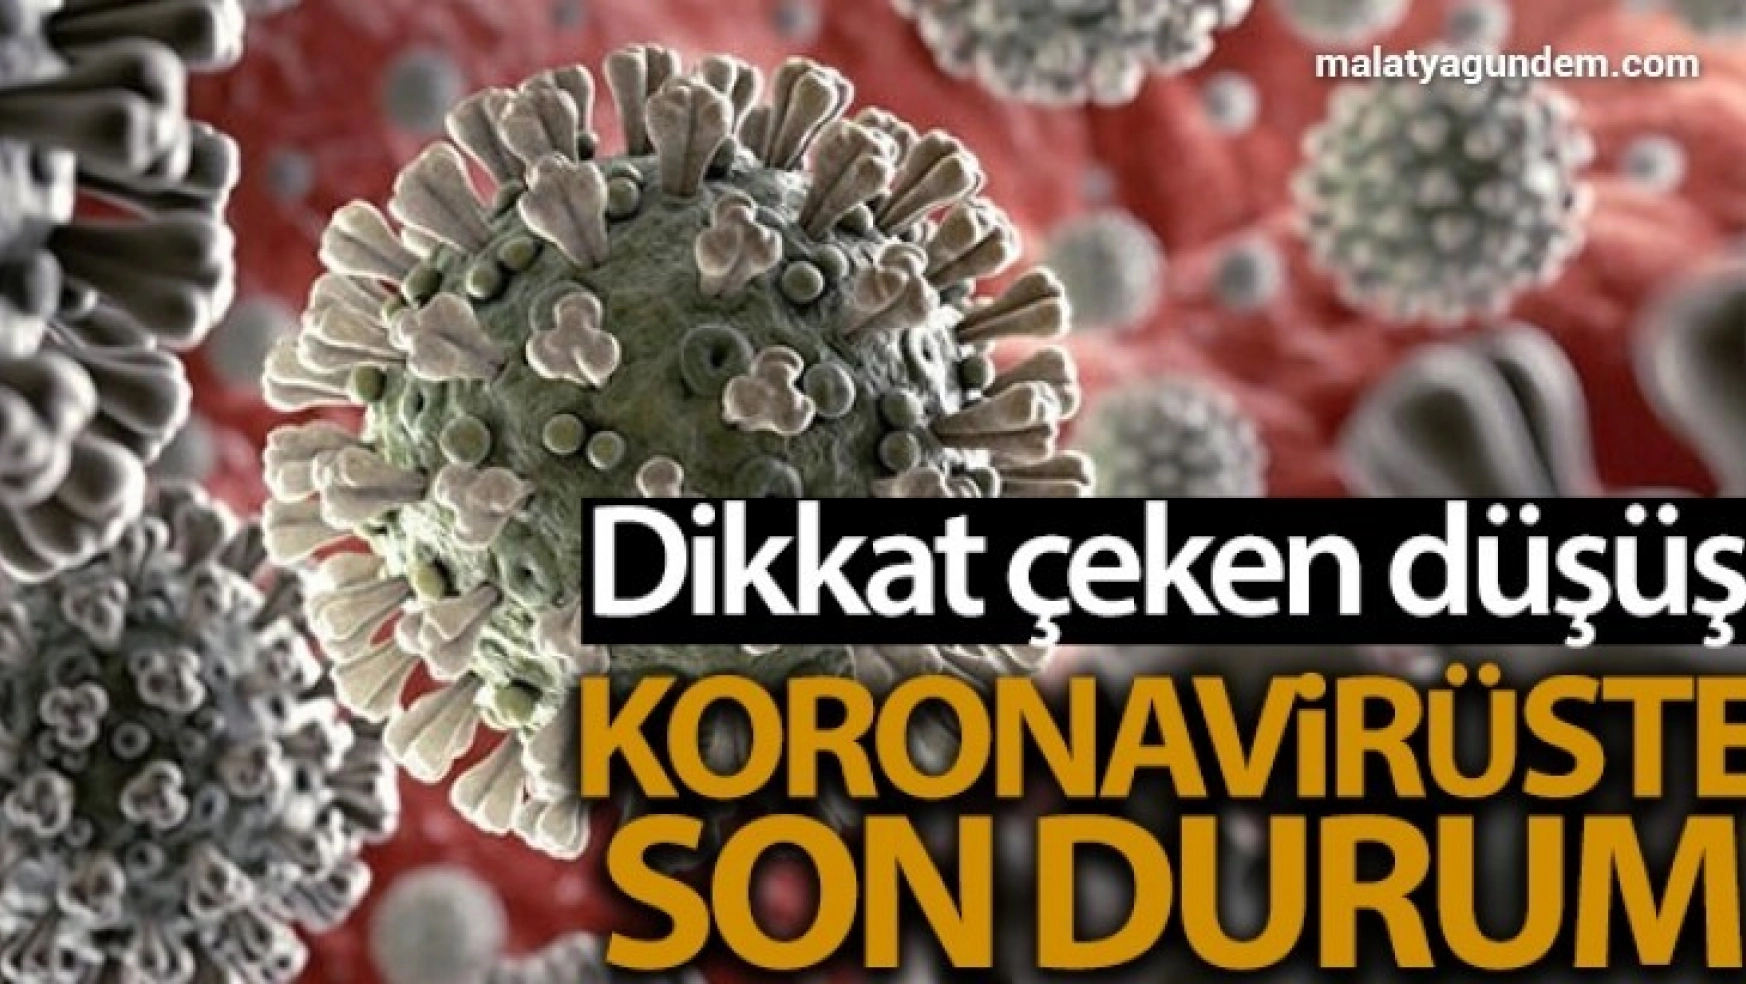 Son 24 saatte korona virüsten 66 kişi hayatını kaybetti